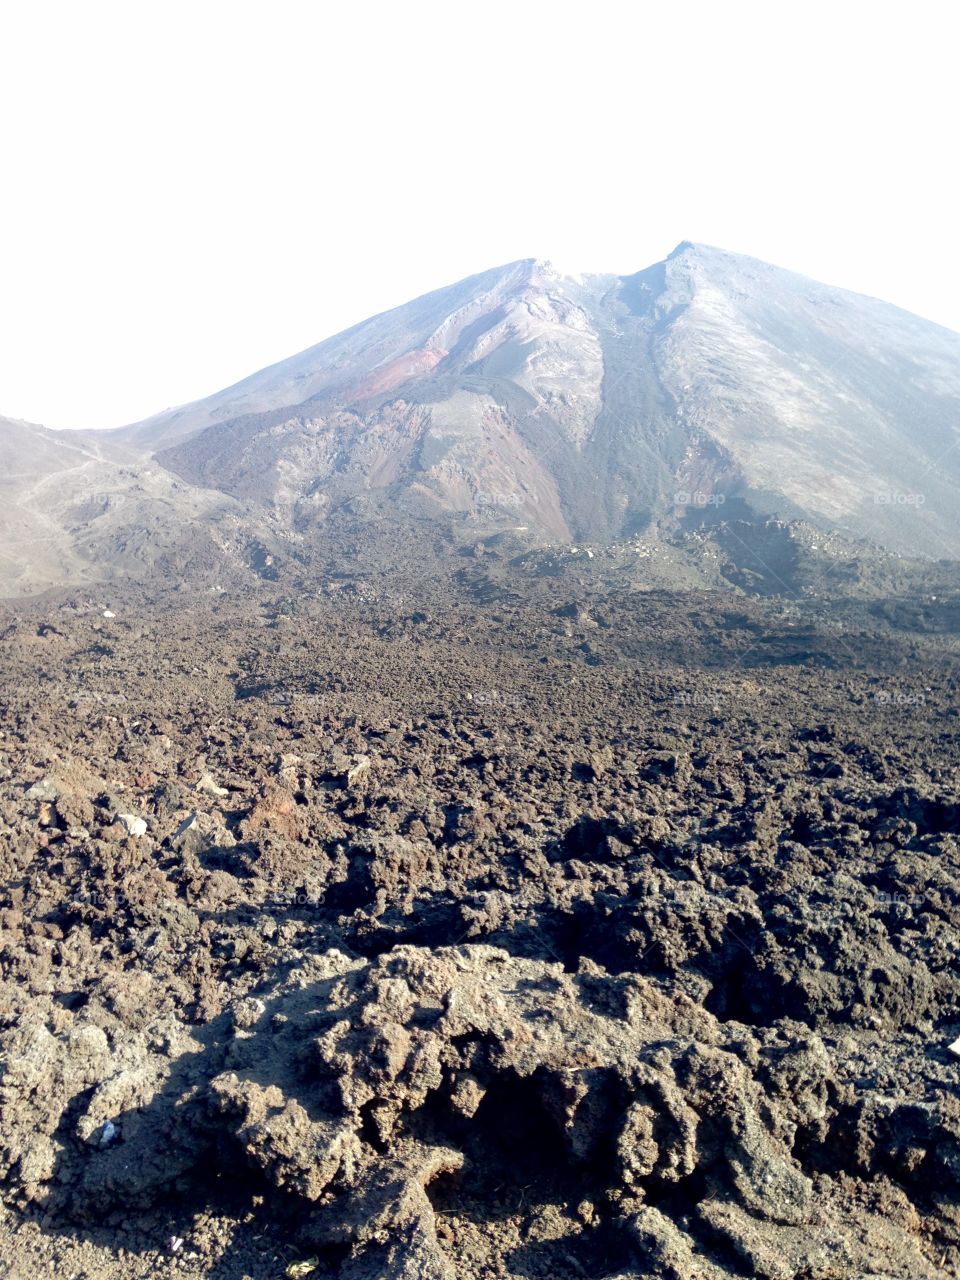 Amongst the rubble. Volcano Pacaya - Guatemala